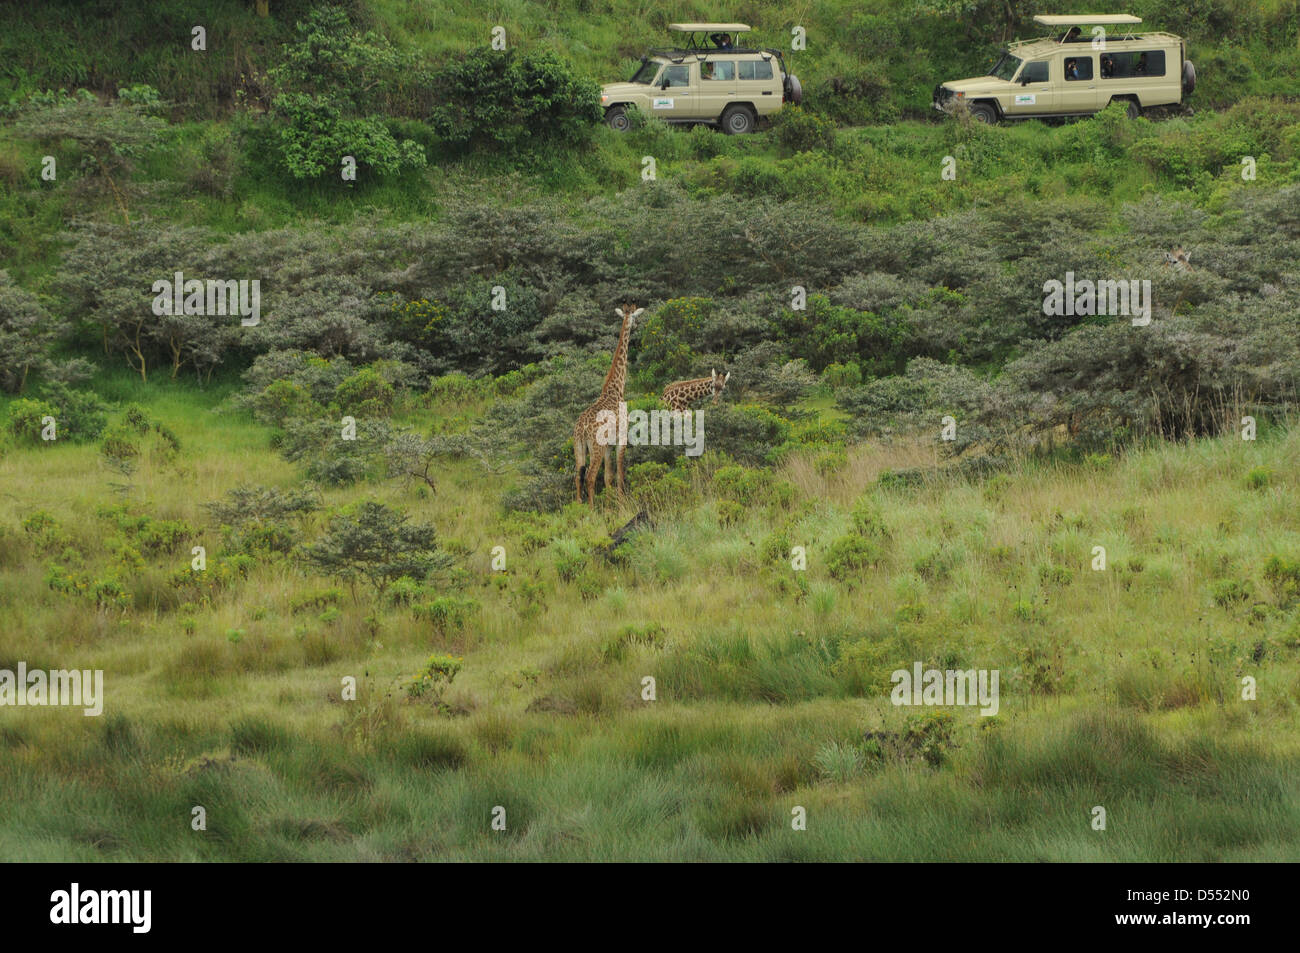 Tanzania Wildlife Safari Giraffen Safari Jeeps können gesehen werden, die Giraffen beobachten Stockfoto